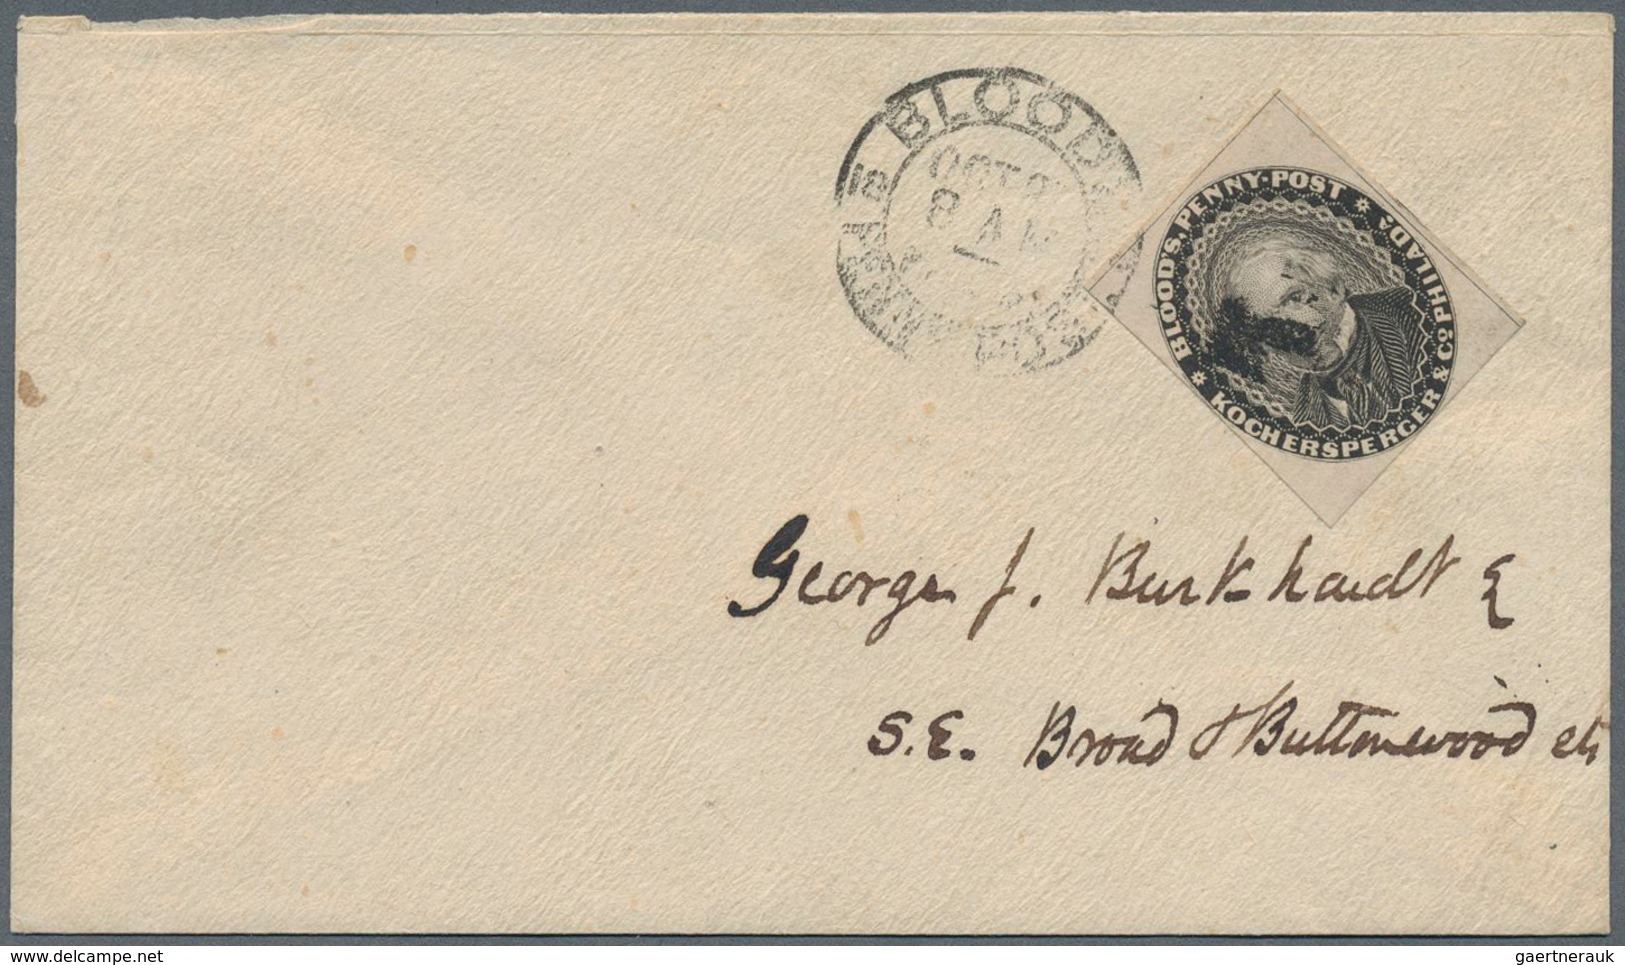 Vereinigte Staaten von Amerika - Lokalausgaben + Carriers Stamps: 1848-54, Blood's Penny Post four c